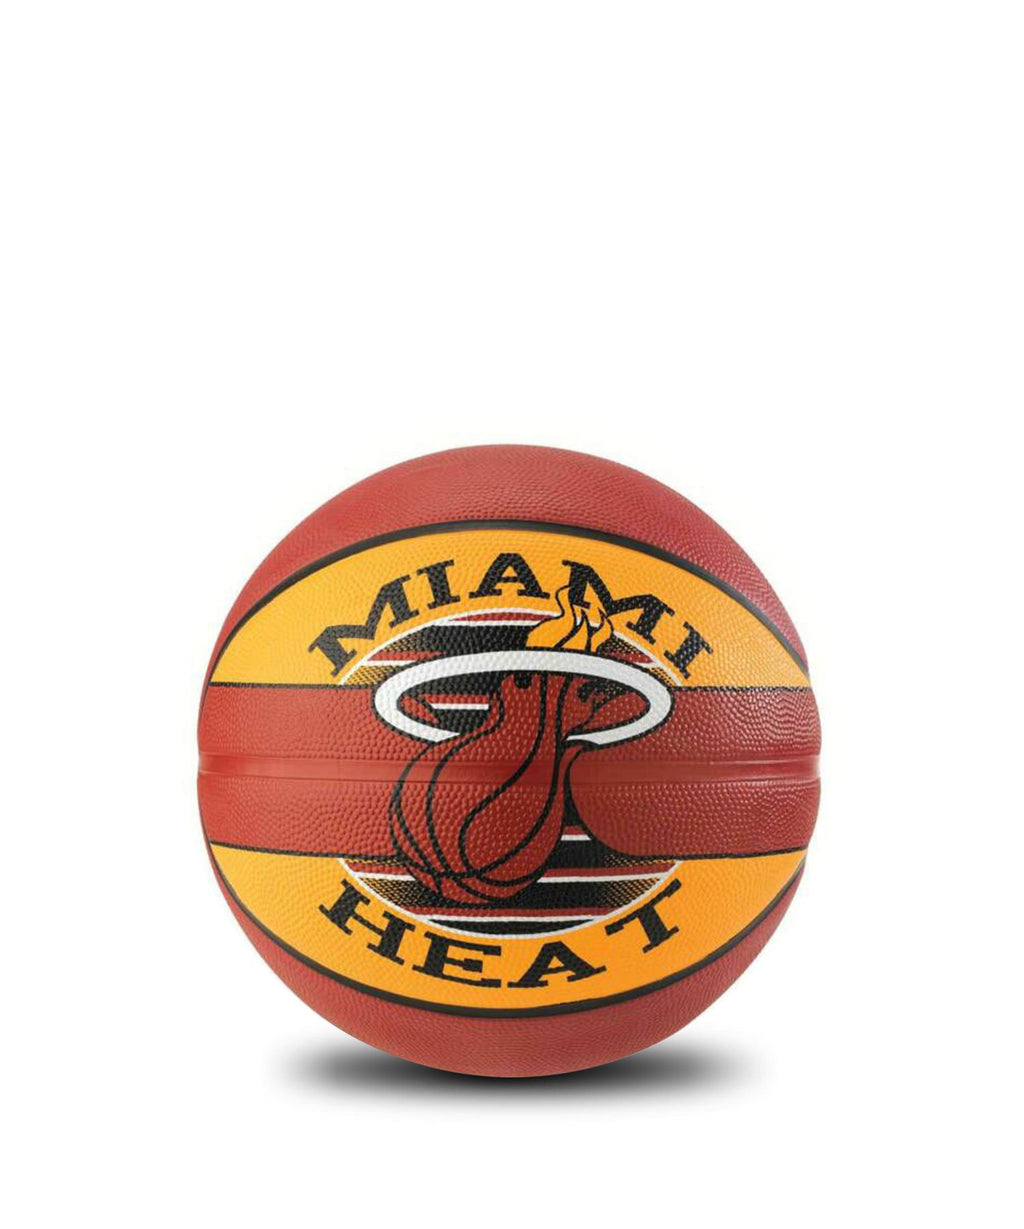 NBA Team Miami Heat (Outdoor)